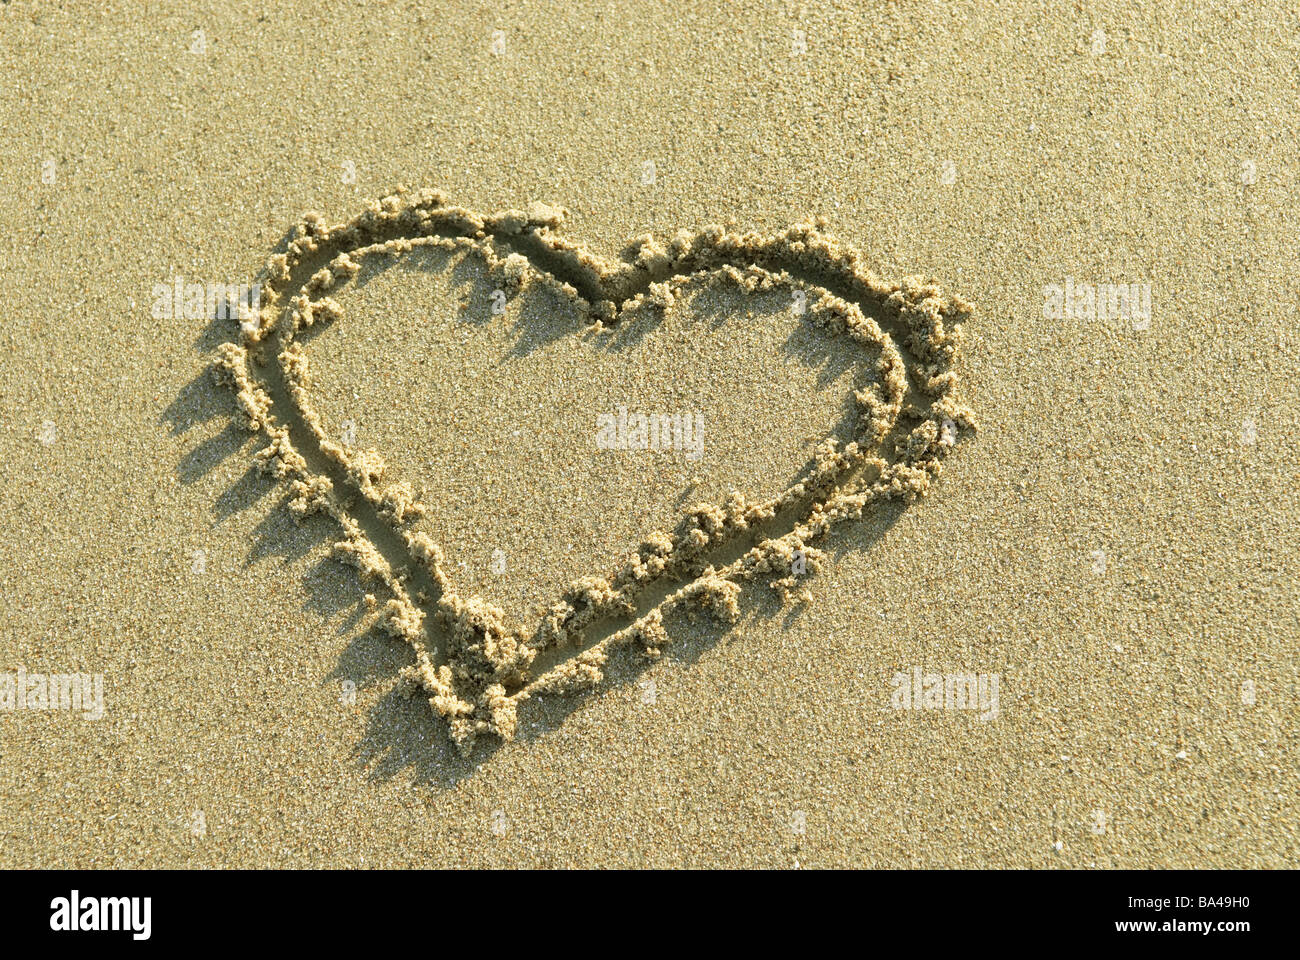 Cuore di sabbia spiaggia sabbiosa 04/2006 al di fuori del bagno è in vacanza vacanza memoria lune di miele in breve sensazione dipinta è verniciato Foto Stock